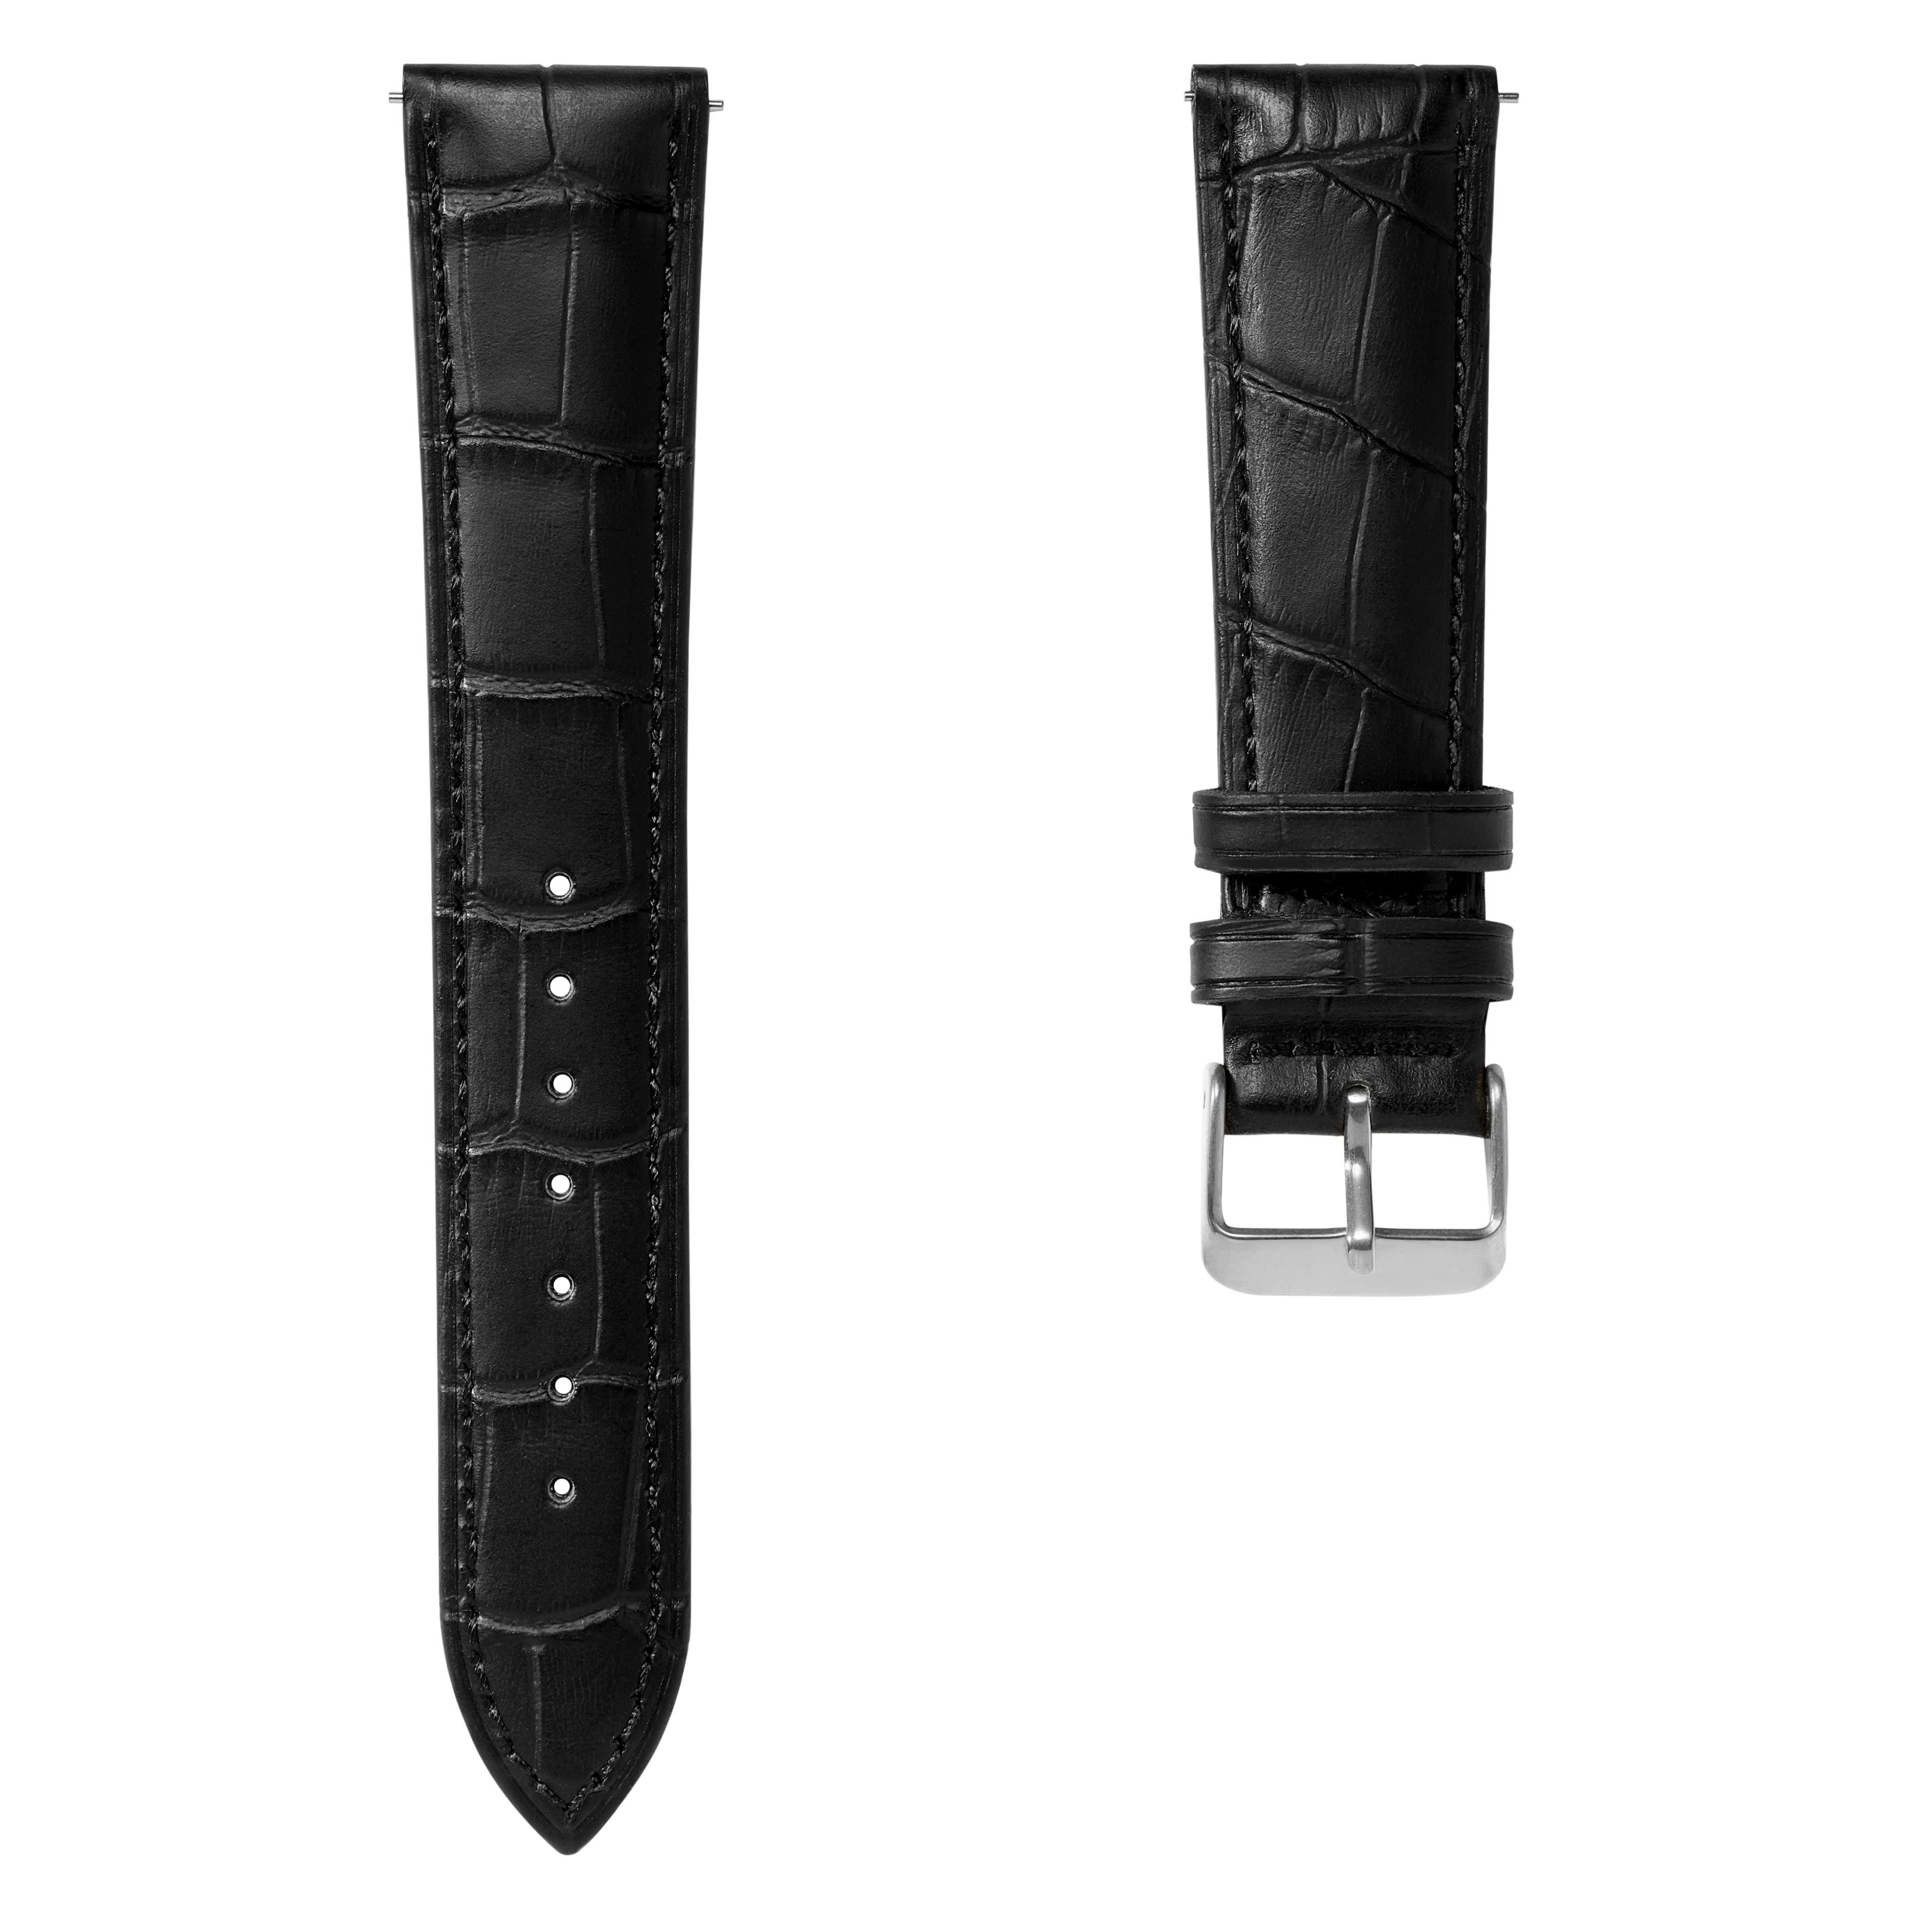 20 mm schwarzes Lederarmband mit Krokodilprägung und silberfarbenem Schnellverschluss